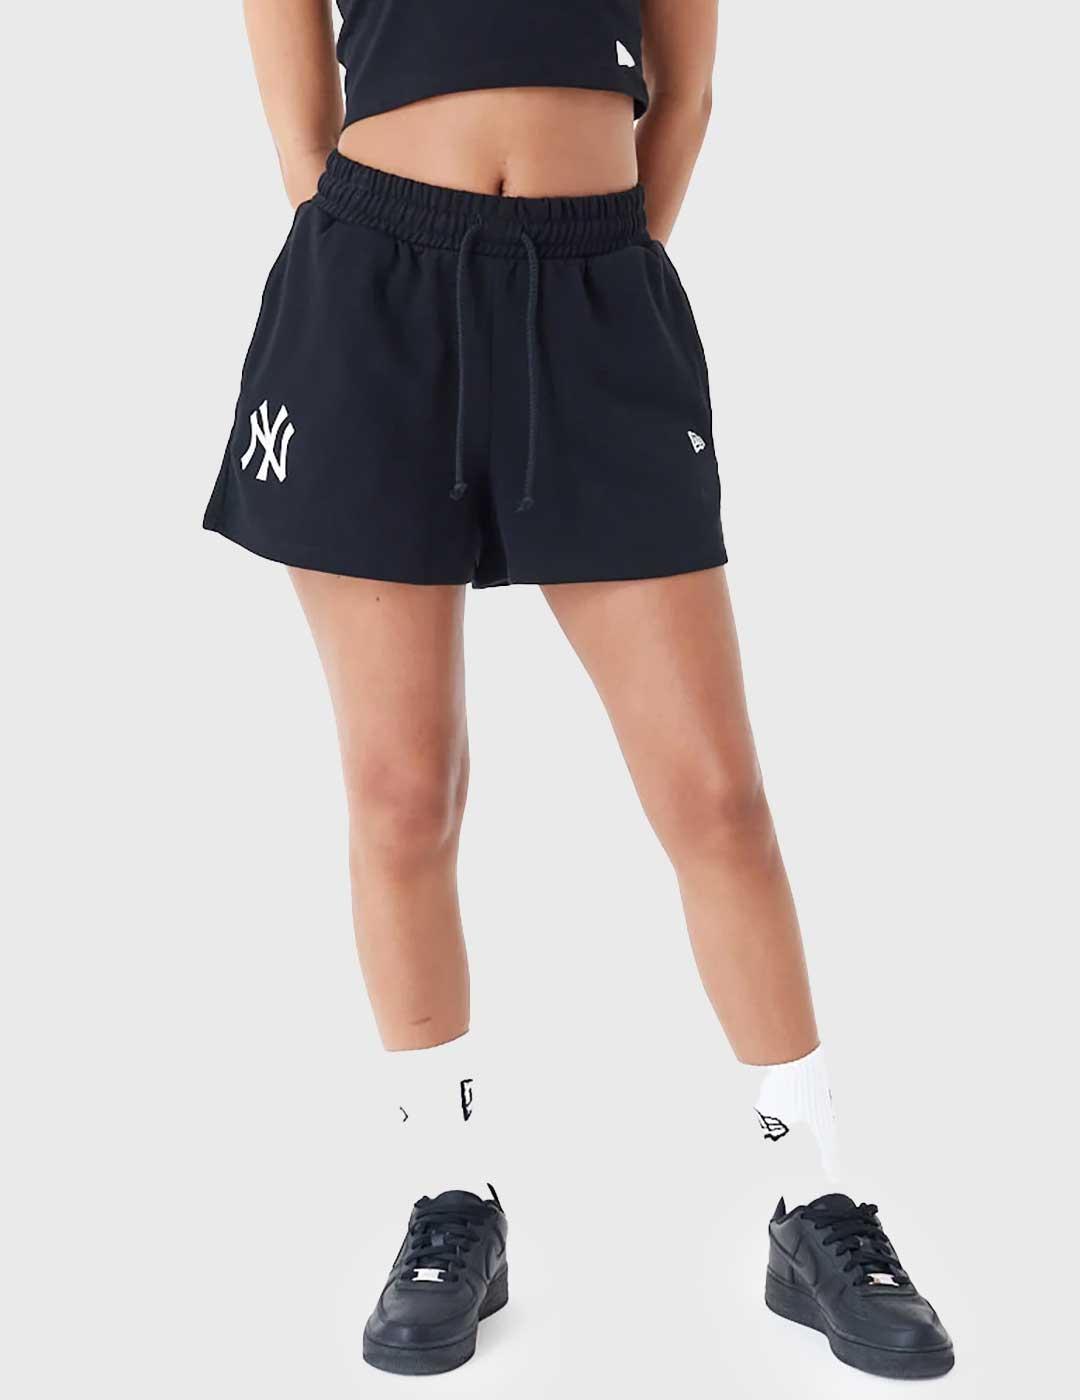 New Era MLB Le Shorts Pantalones Cortos negros para mujer